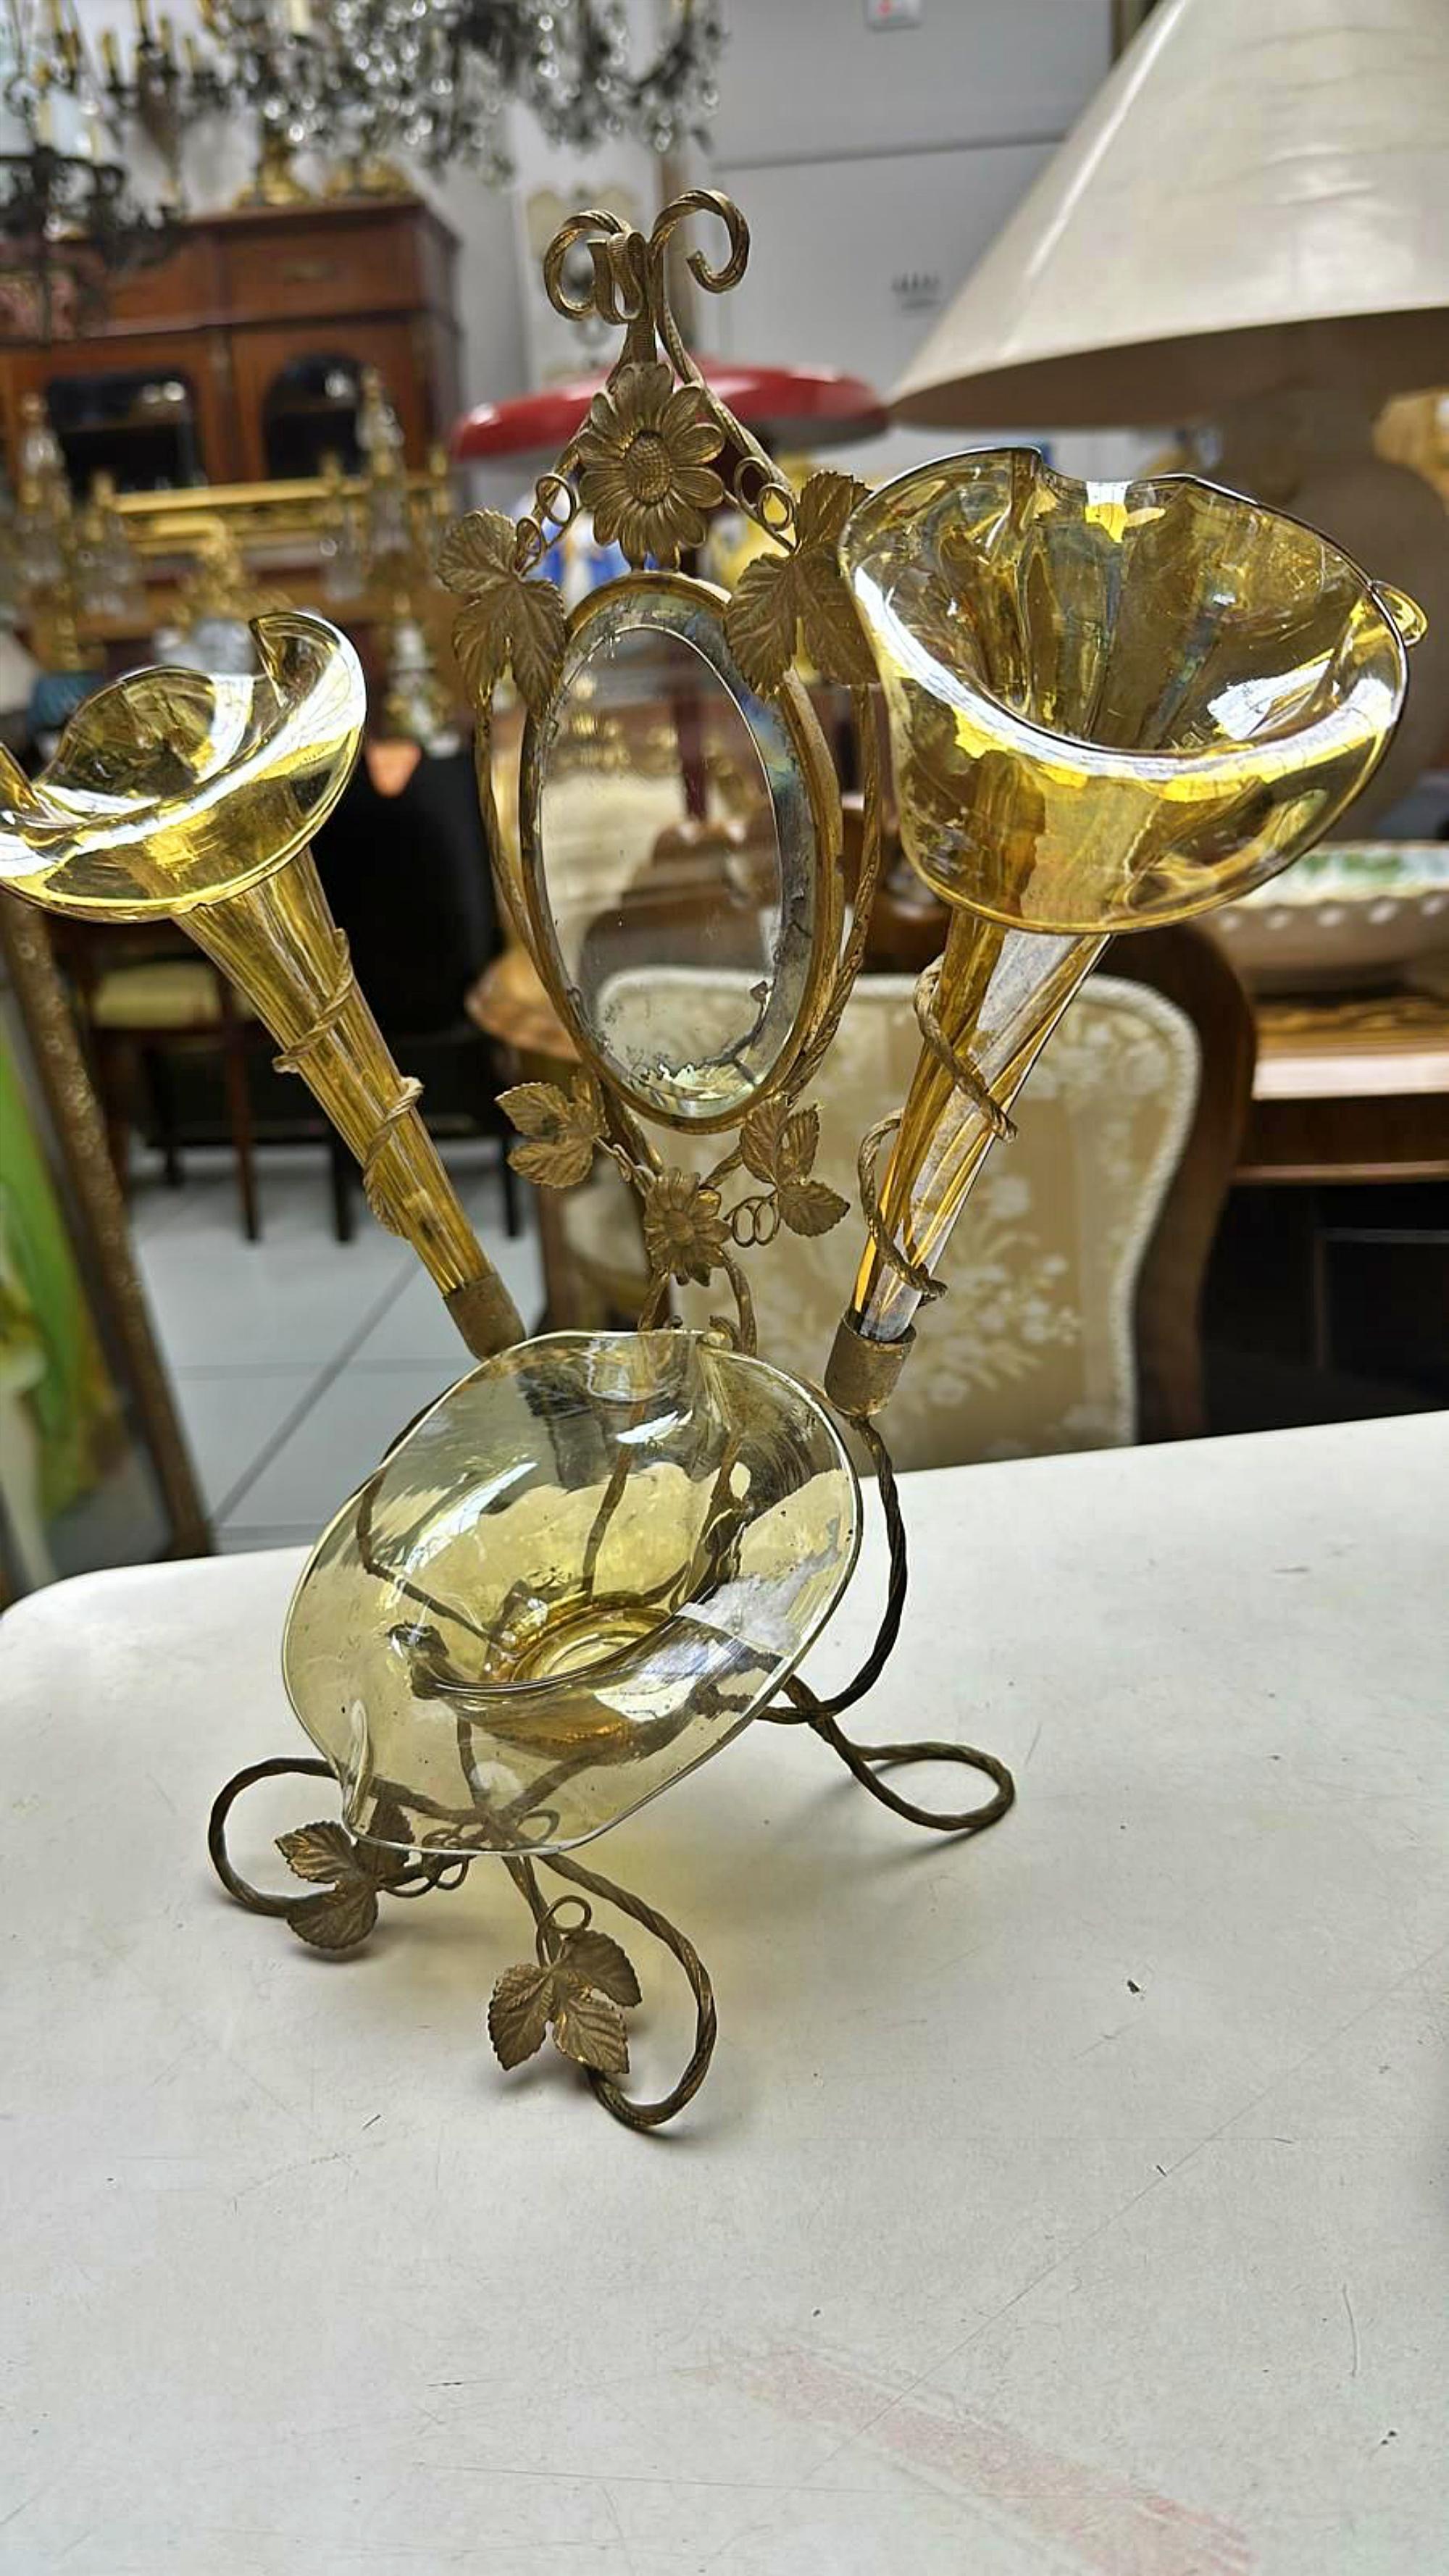 Superbe porte-fleurs en verre italien de Murano du 19e siècle
Art déco
en laiton avec miroir et verres en verre de Murano,
Verre dans les tons paille
31cm x 32cm
excellent état, le verre est sans cassure ni rayure